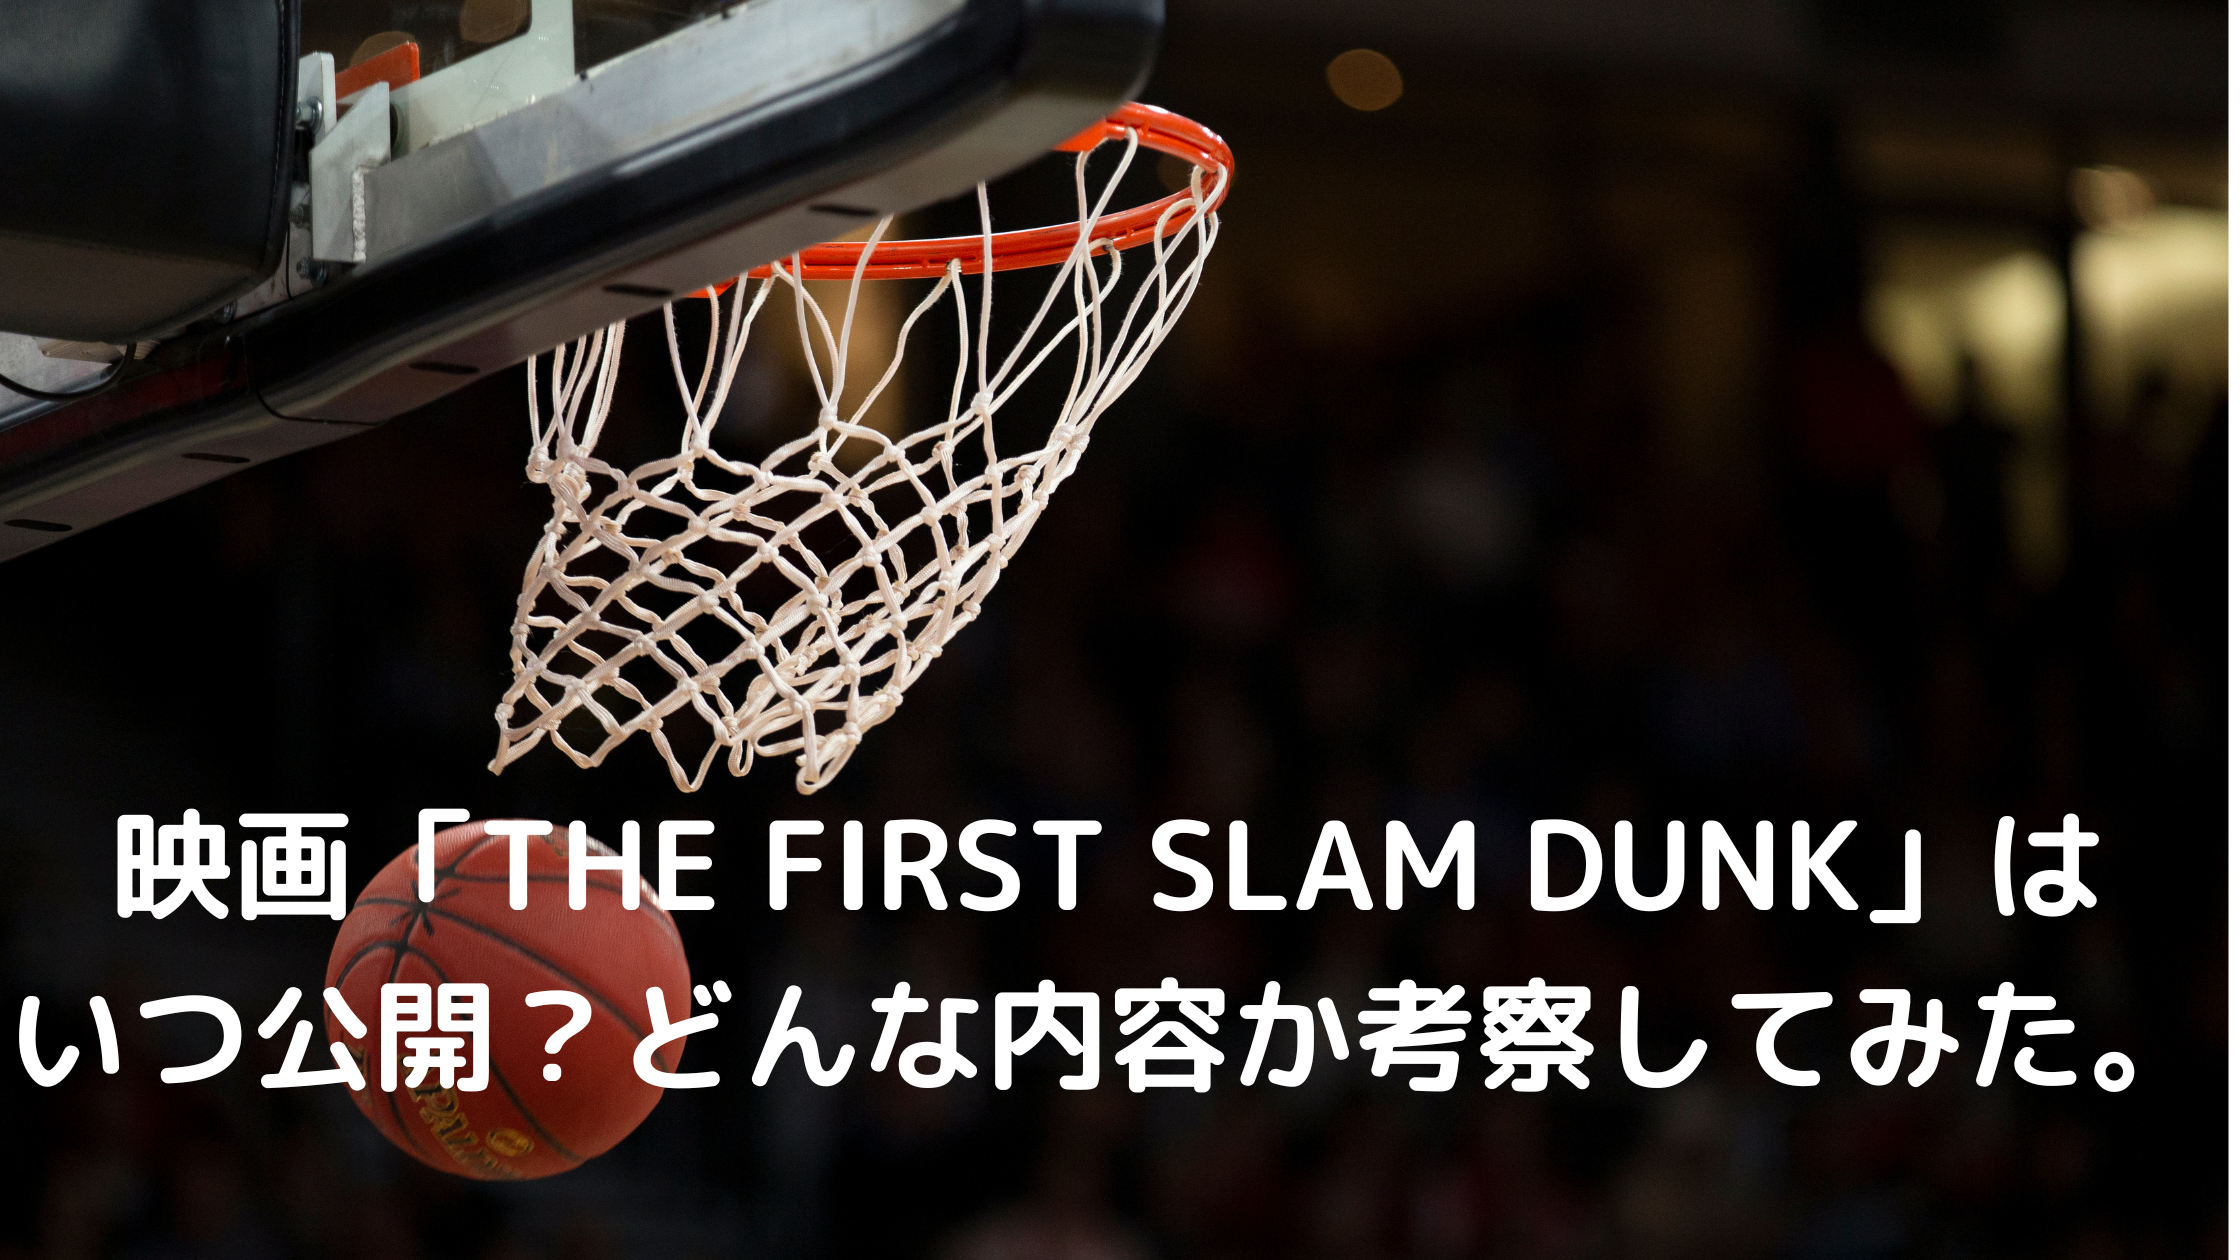 映画 The First Slam Dunk はいつ公開 どんな内容か考察してみた Tsukasa Blog